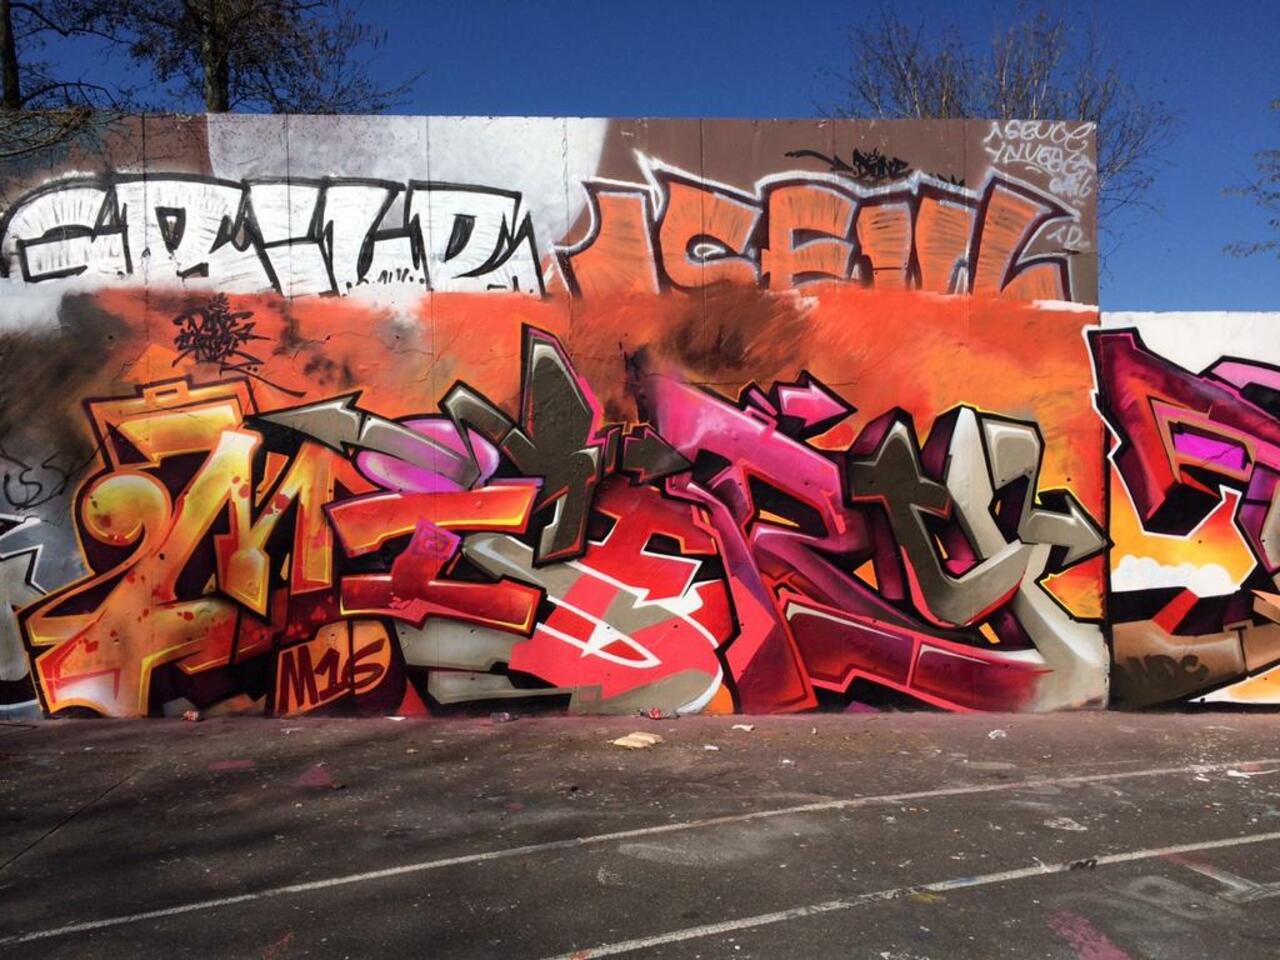 Misery

#Graffiti #StreetArt #Mural #painting #Urban #Art http://t.co/EtV3oeTD0C